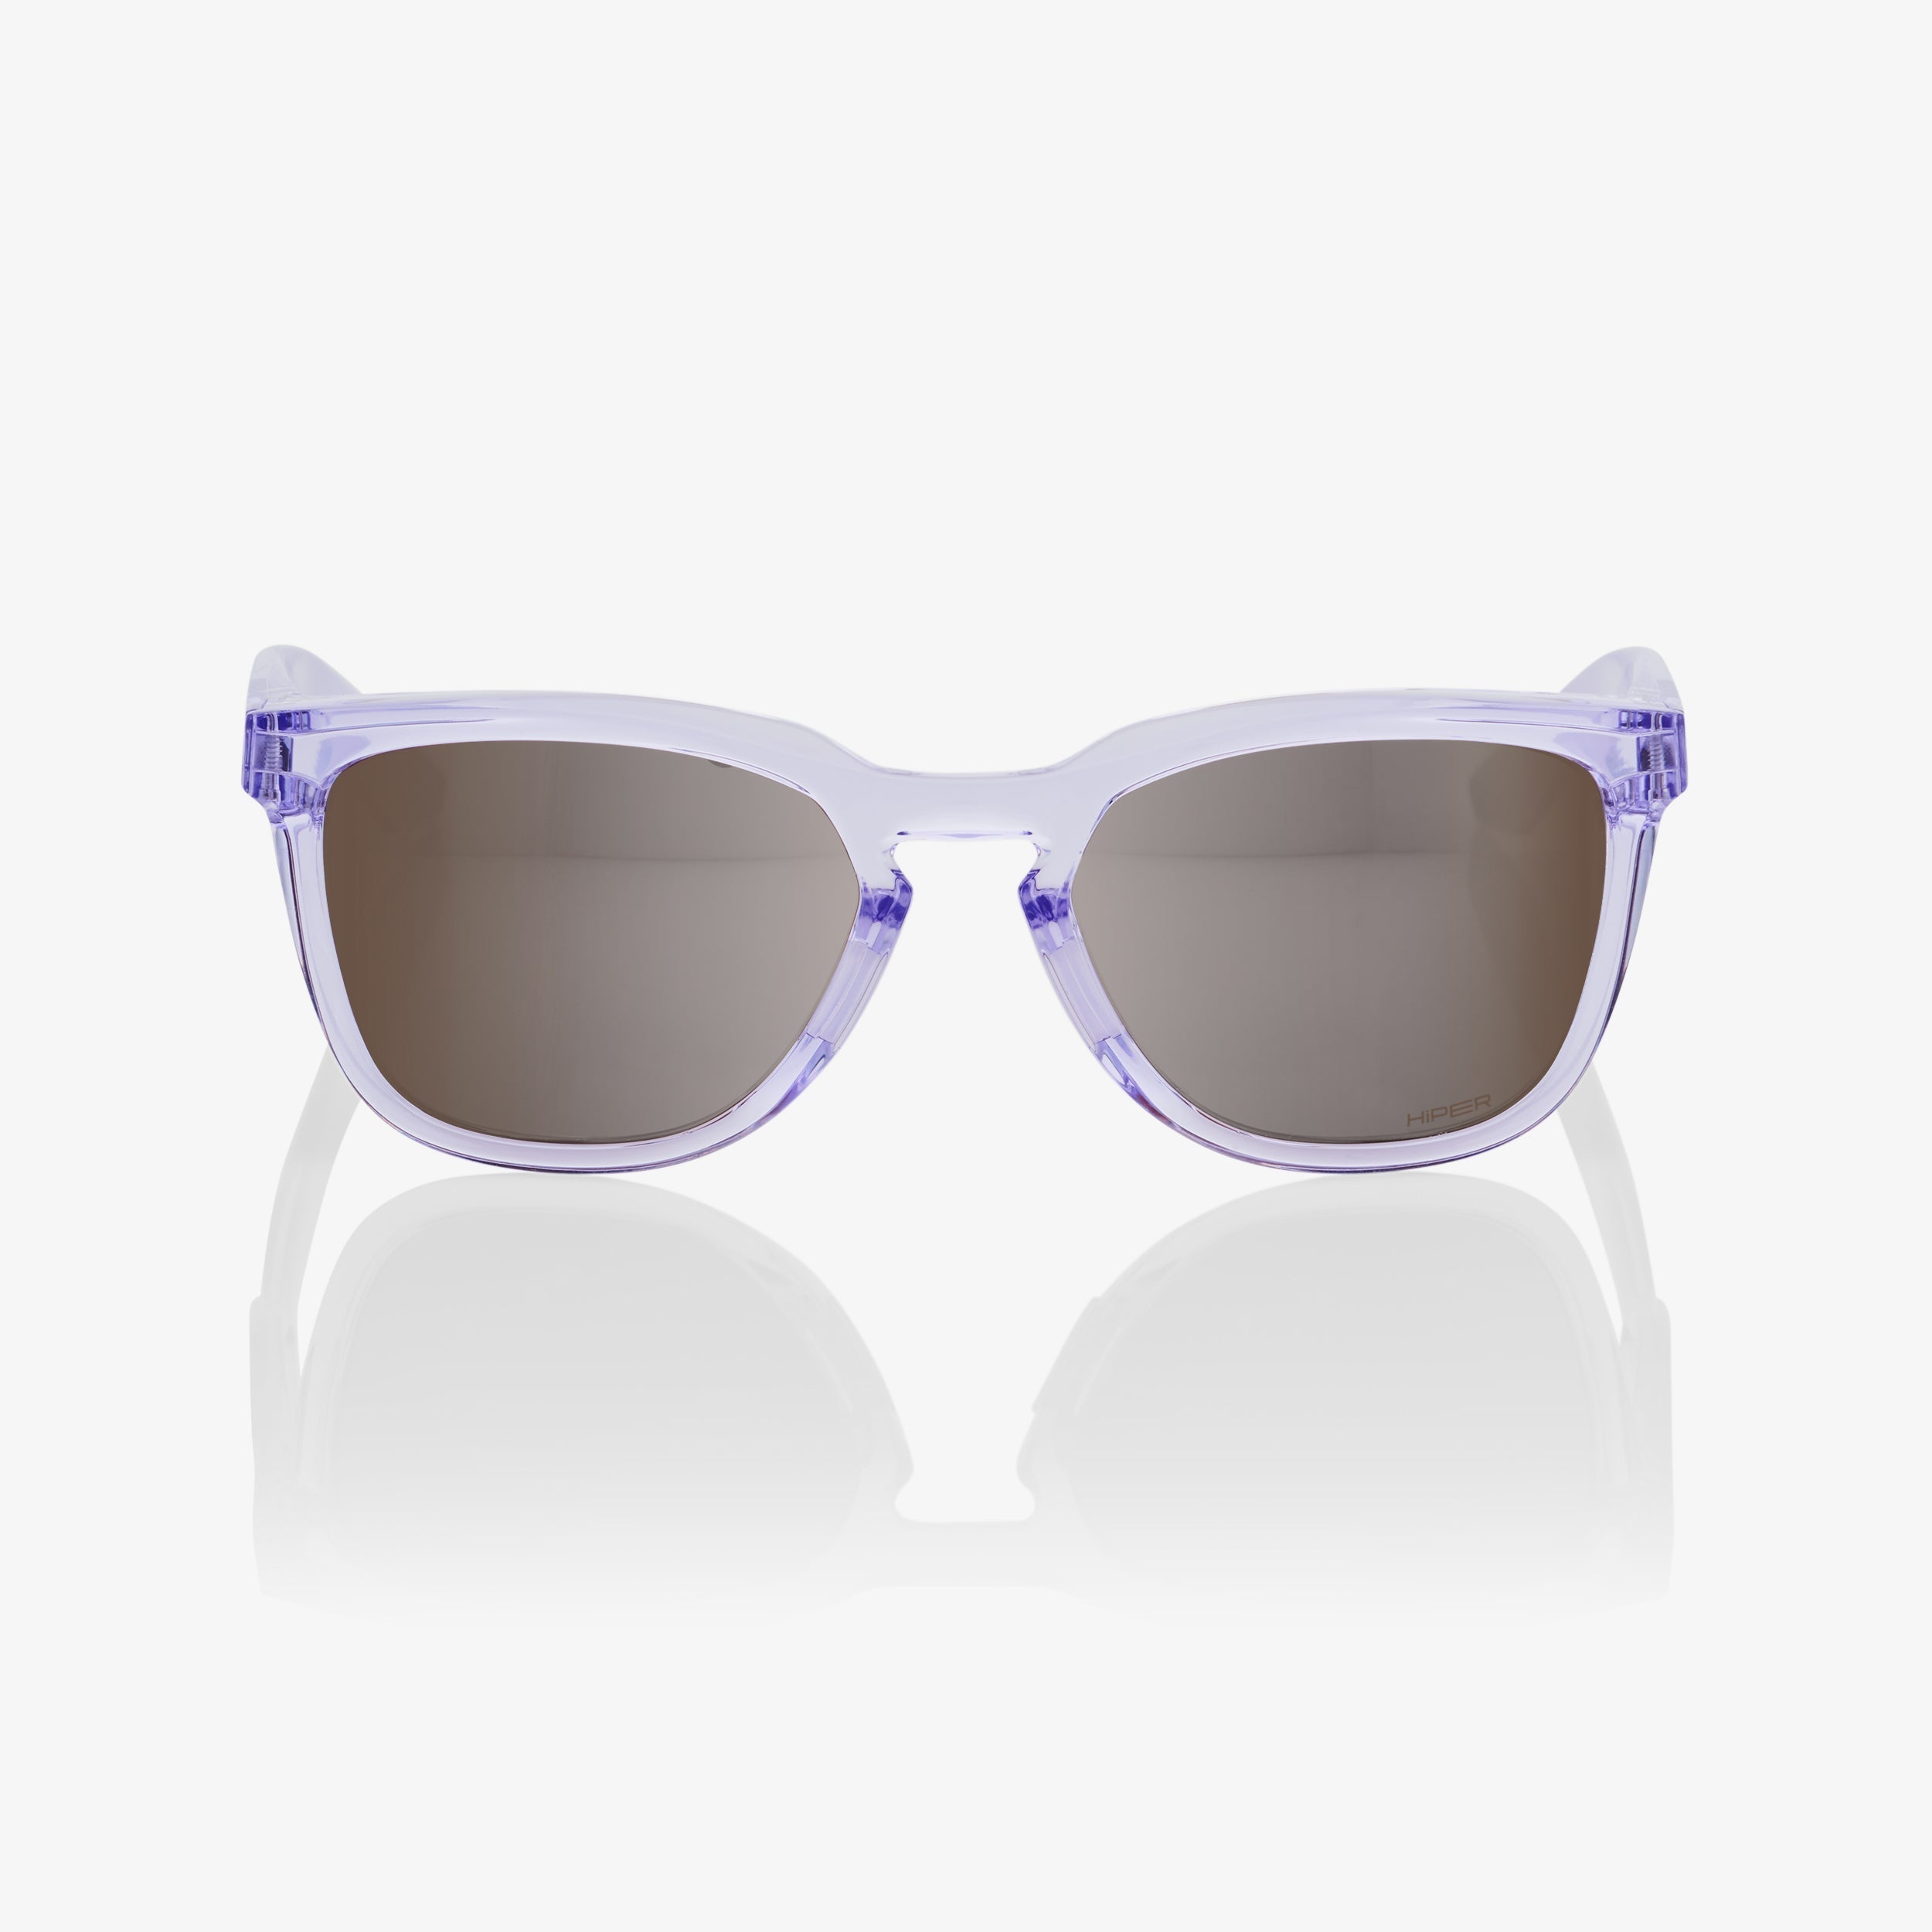 HUDSON - Polished Translucent Lavender - HiPER Silver Mirror Lens